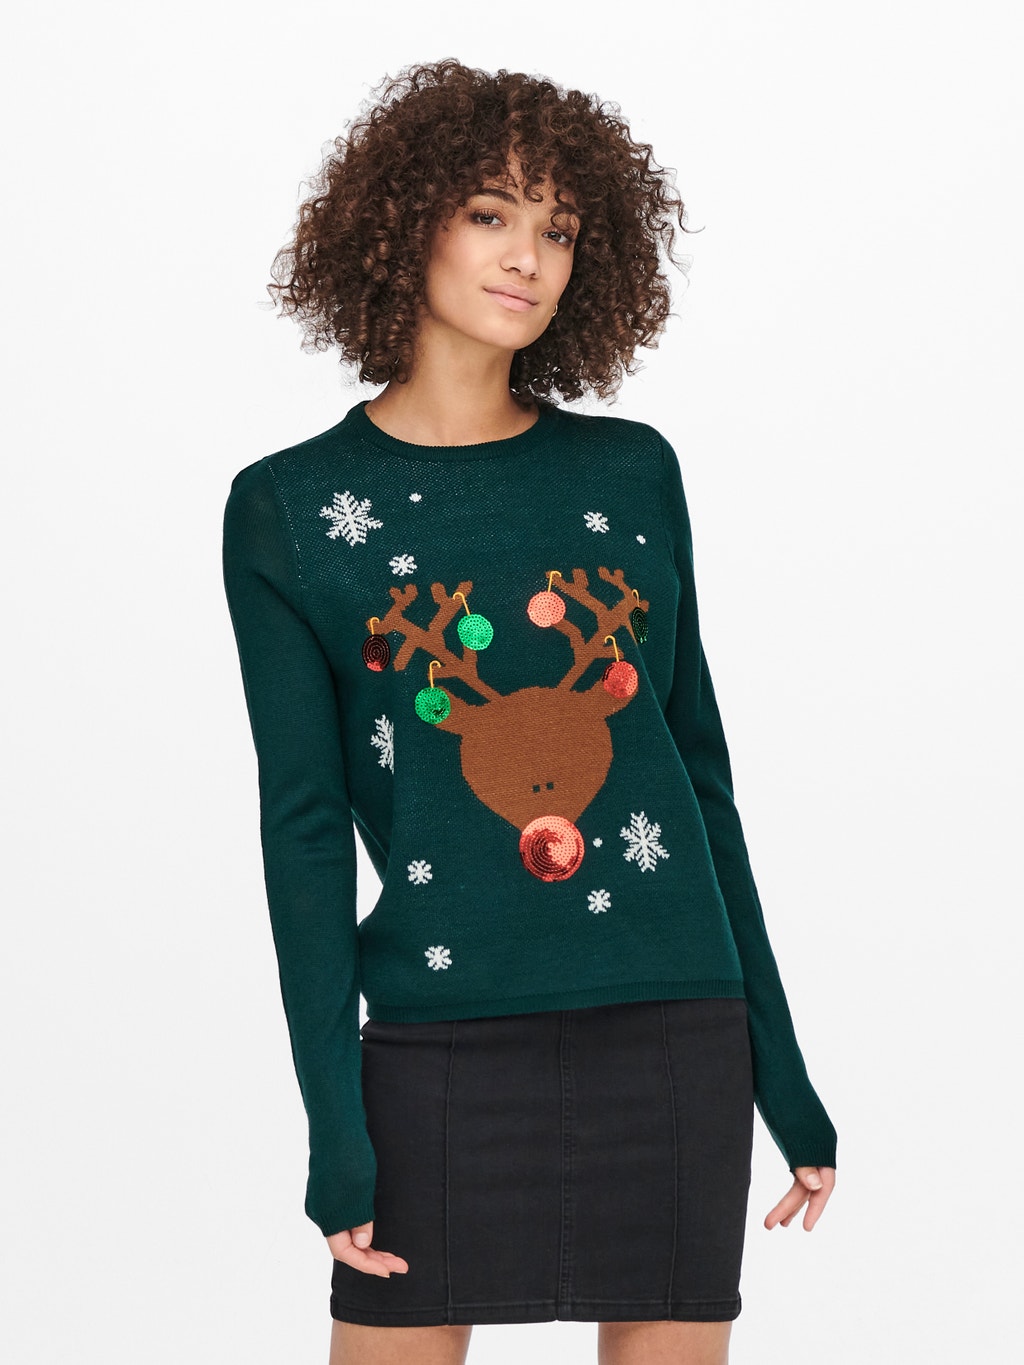 relais voor erfgoed Kerst Sweater met 20% korting! | ONLY®